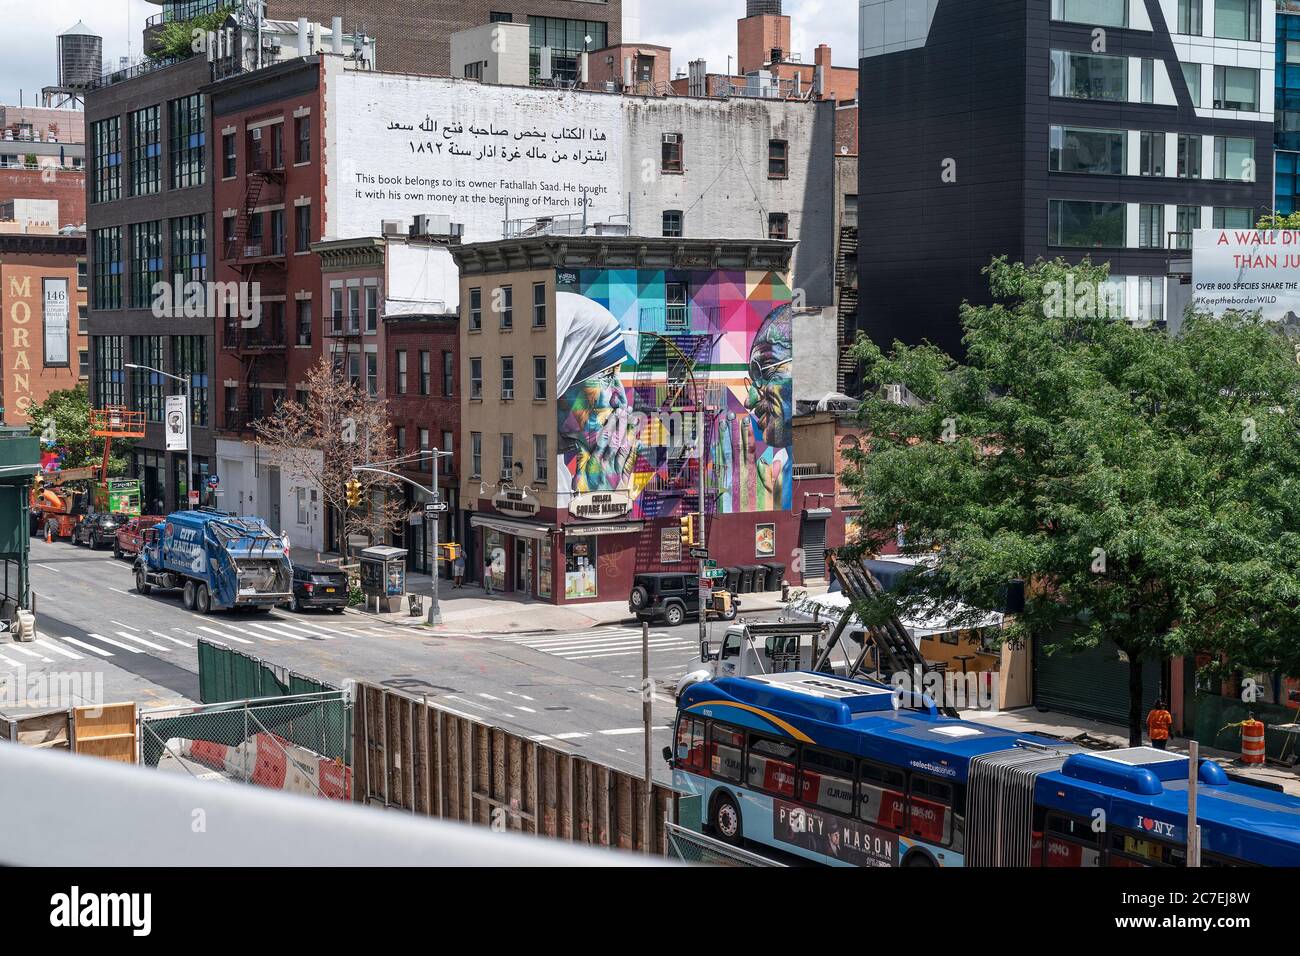 New York, Usa. Juli 2020. Wandgemälde von Eduardo Kobra, das Mahatma Gandhi und Mutter Teresa vom High Line Park aus zeigt, während es mit begrenzter Kapazität für die Öffentlichkeit wieder geöffnet wird, nachdem es im März unter Covid-19 in New York am 16. Juli 2020 vorübergehend geschlossen wurde. Park ist öffentlich, aber durch private Investitionen finanziert. Strenge soziale Distanzierungsregeln sind vorhanden und Besucher müssen im Voraus online ein kostenloses Zeitfahrkarte reservieren. Das Tragen einer Maske ist obligatorisch und grüne Punkte sind auf dem Boden sechs Meter auseinander platziert, um Besucher getrennt zu halten. (Foto von Lev Radin/Siap USA) Quelle: SIPA USA/Alamy Live News Stockfoto